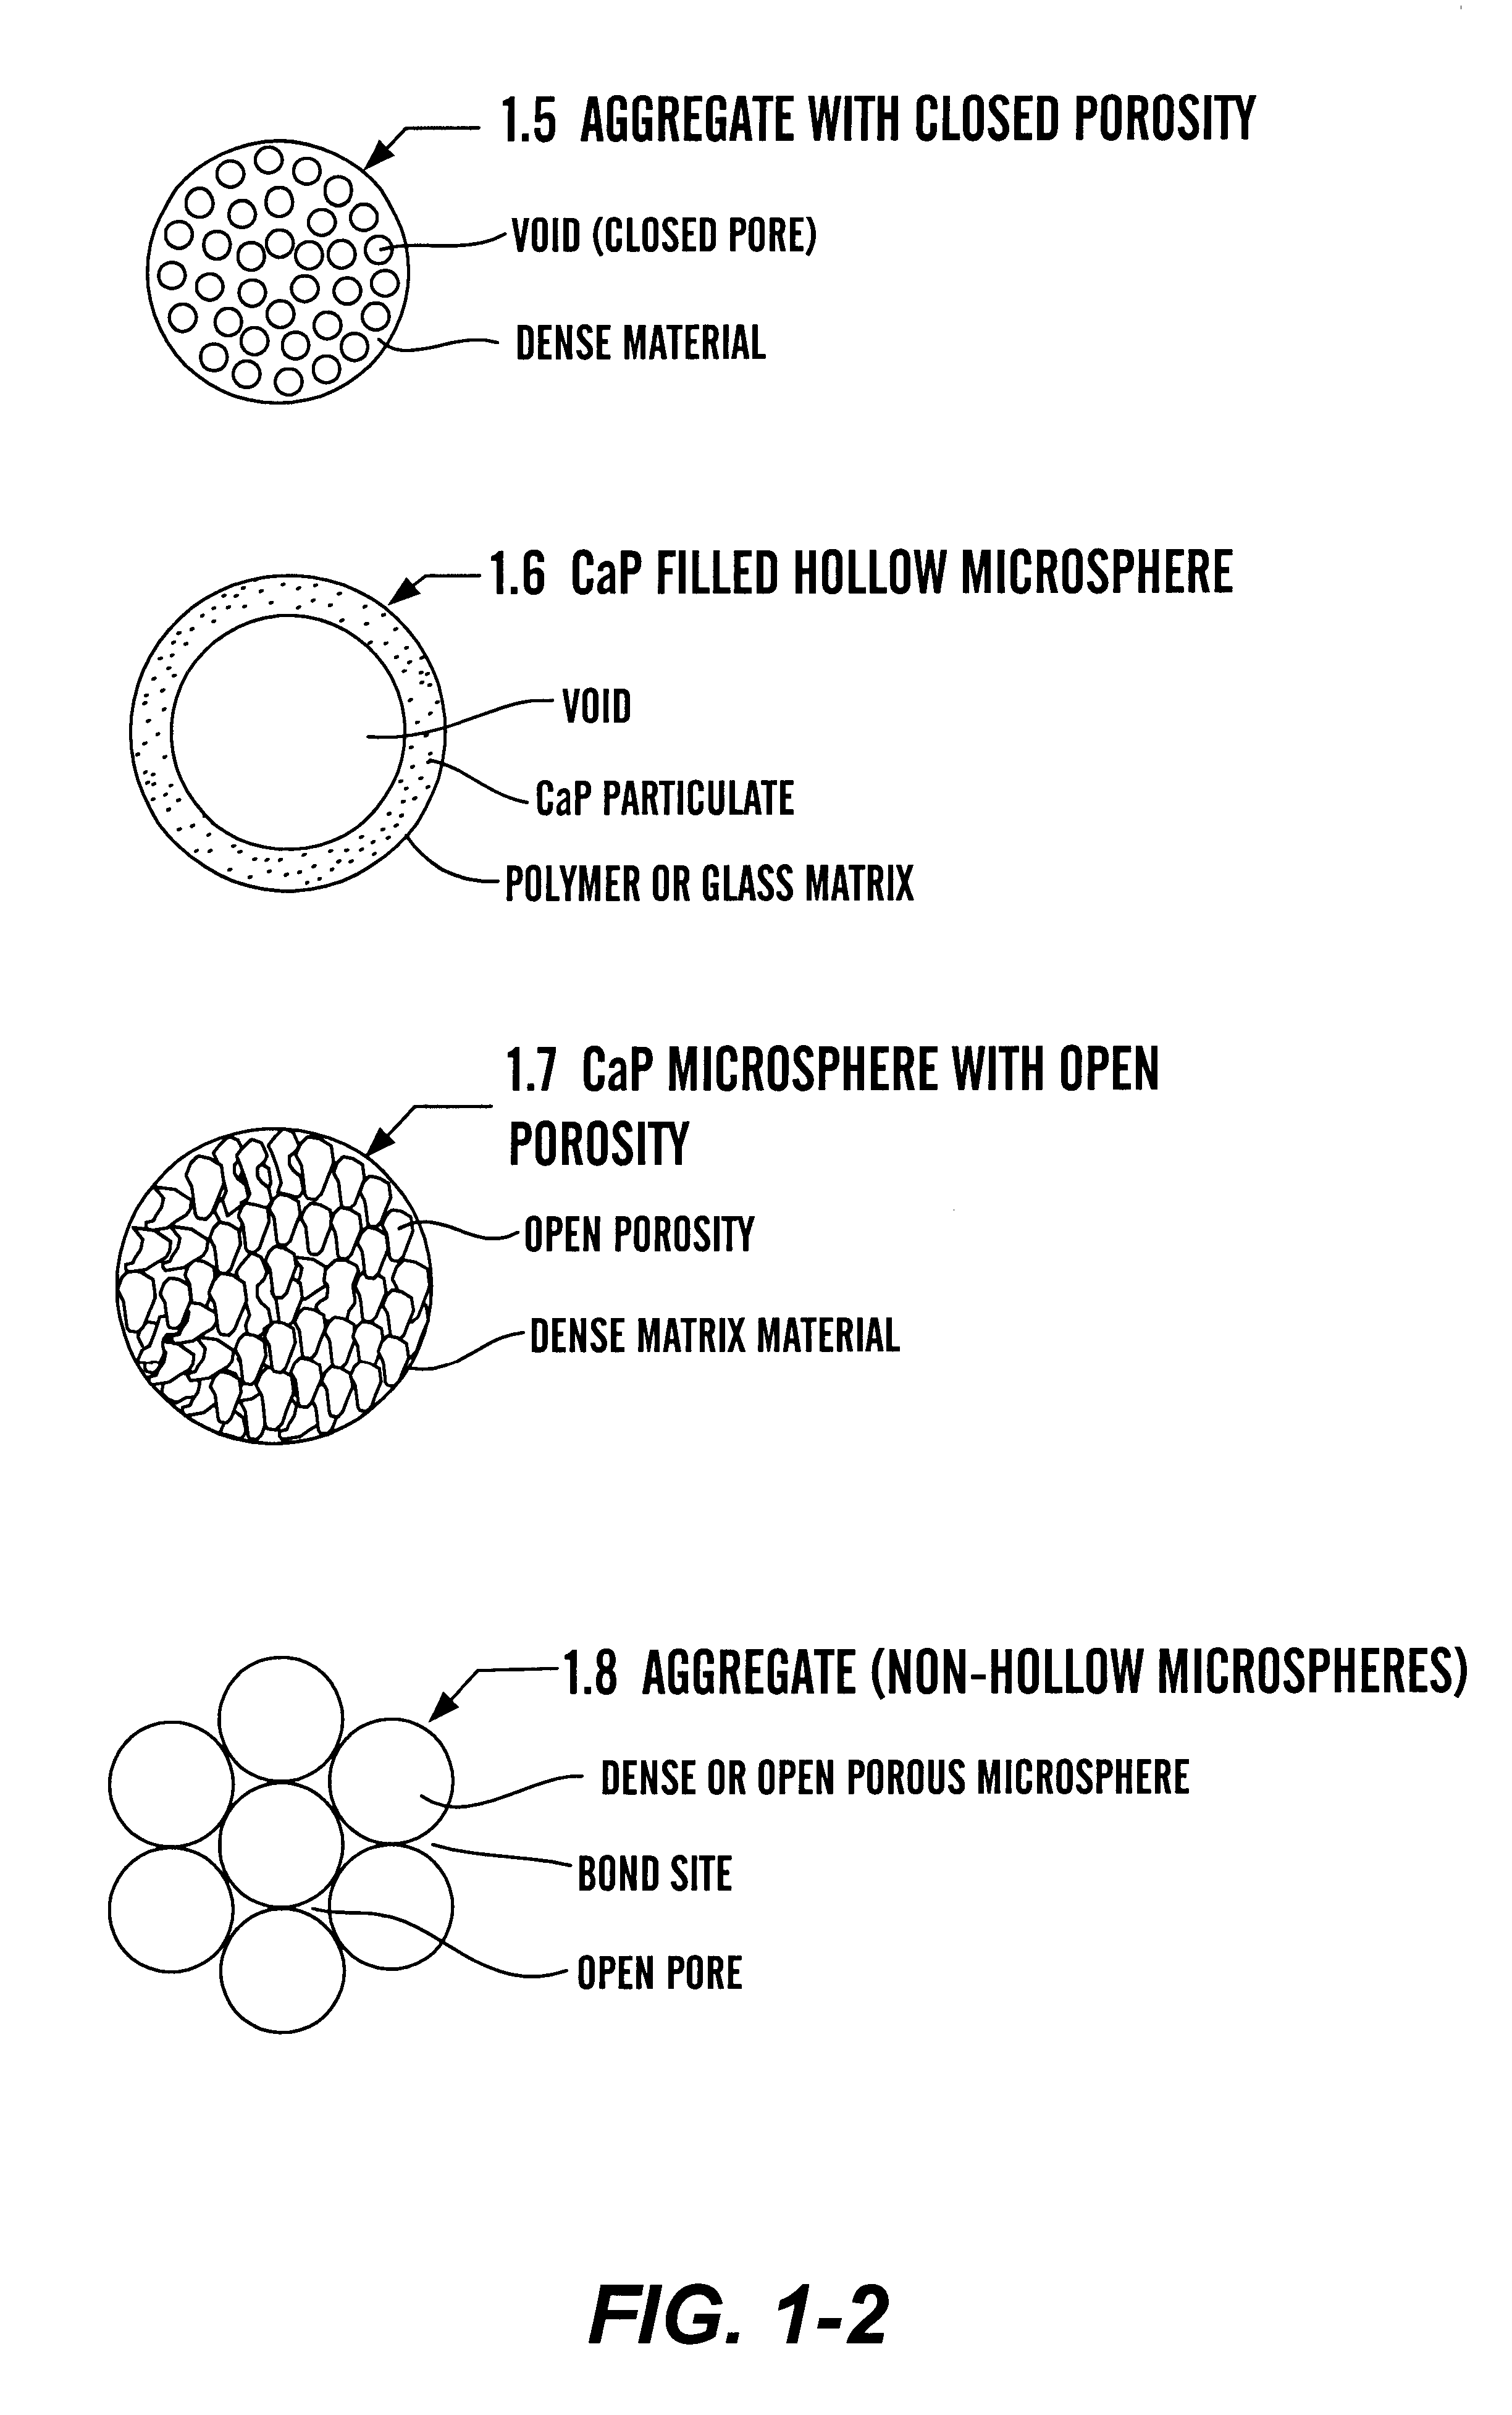 Calcium phosphate microcarriers and microspheres